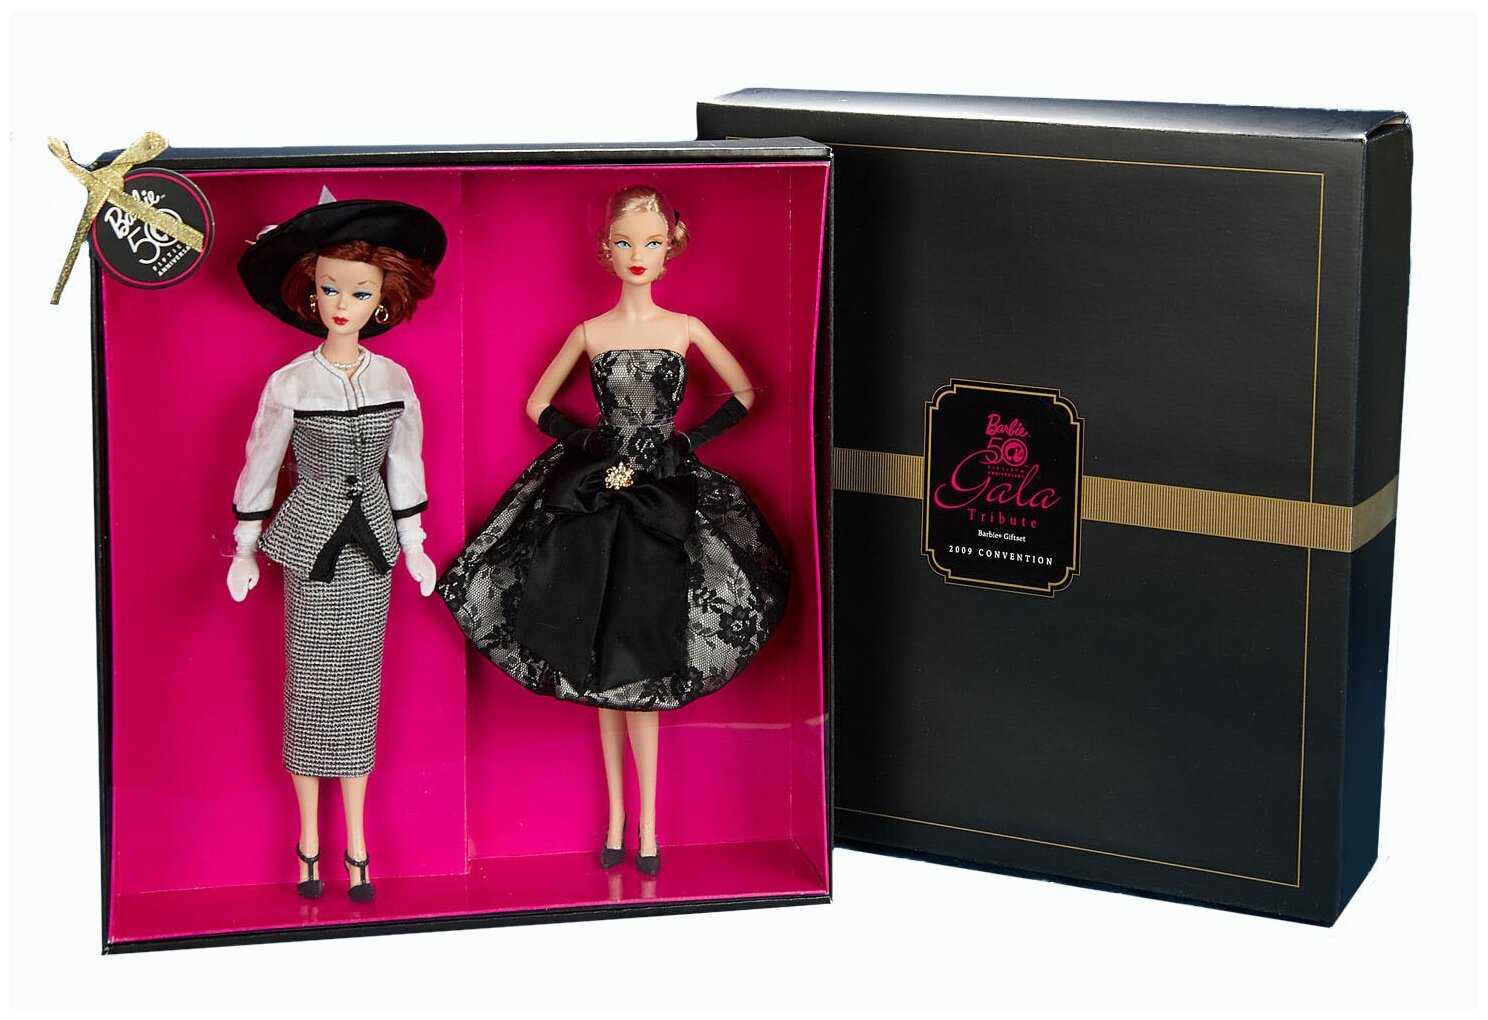 Набор кукол Barbie 2009 Convention 50 th Anniversary Gala Tribute Set (Барби Выставка 2009 года Высшая Награда на 50-летие)